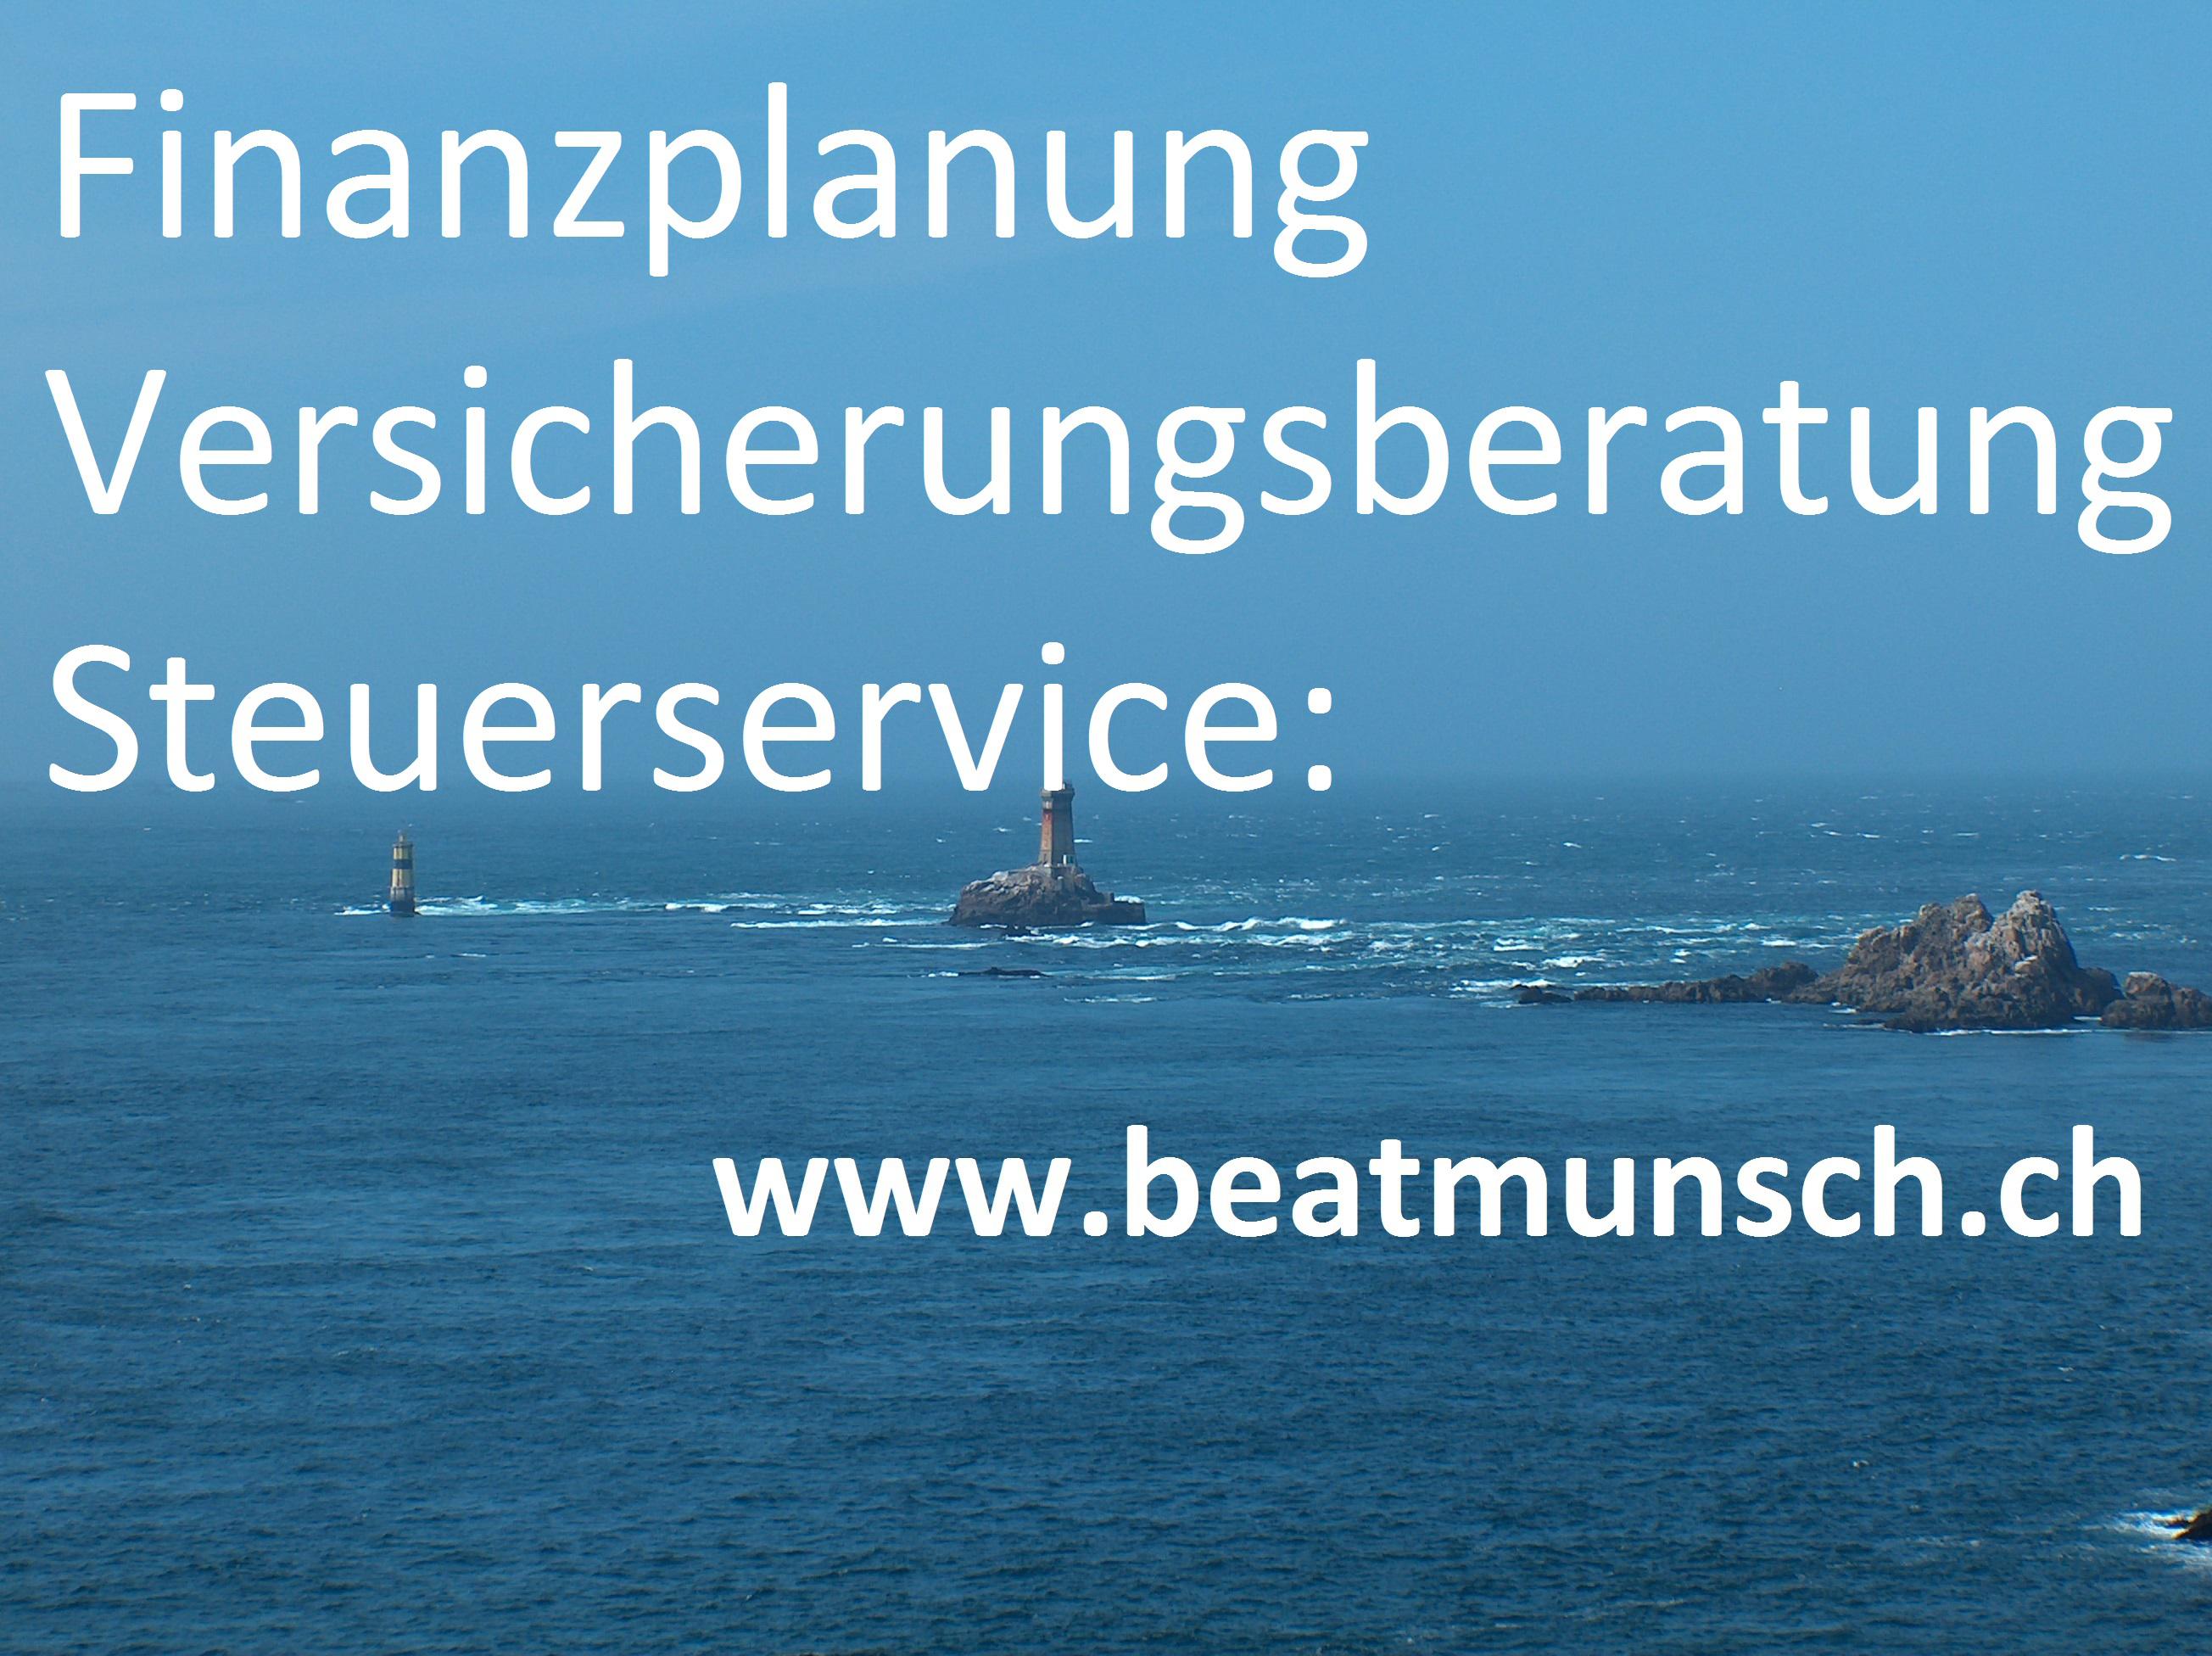 Beat Munsch - Finanzplanung. Versicherungsberatung. Steuerservice